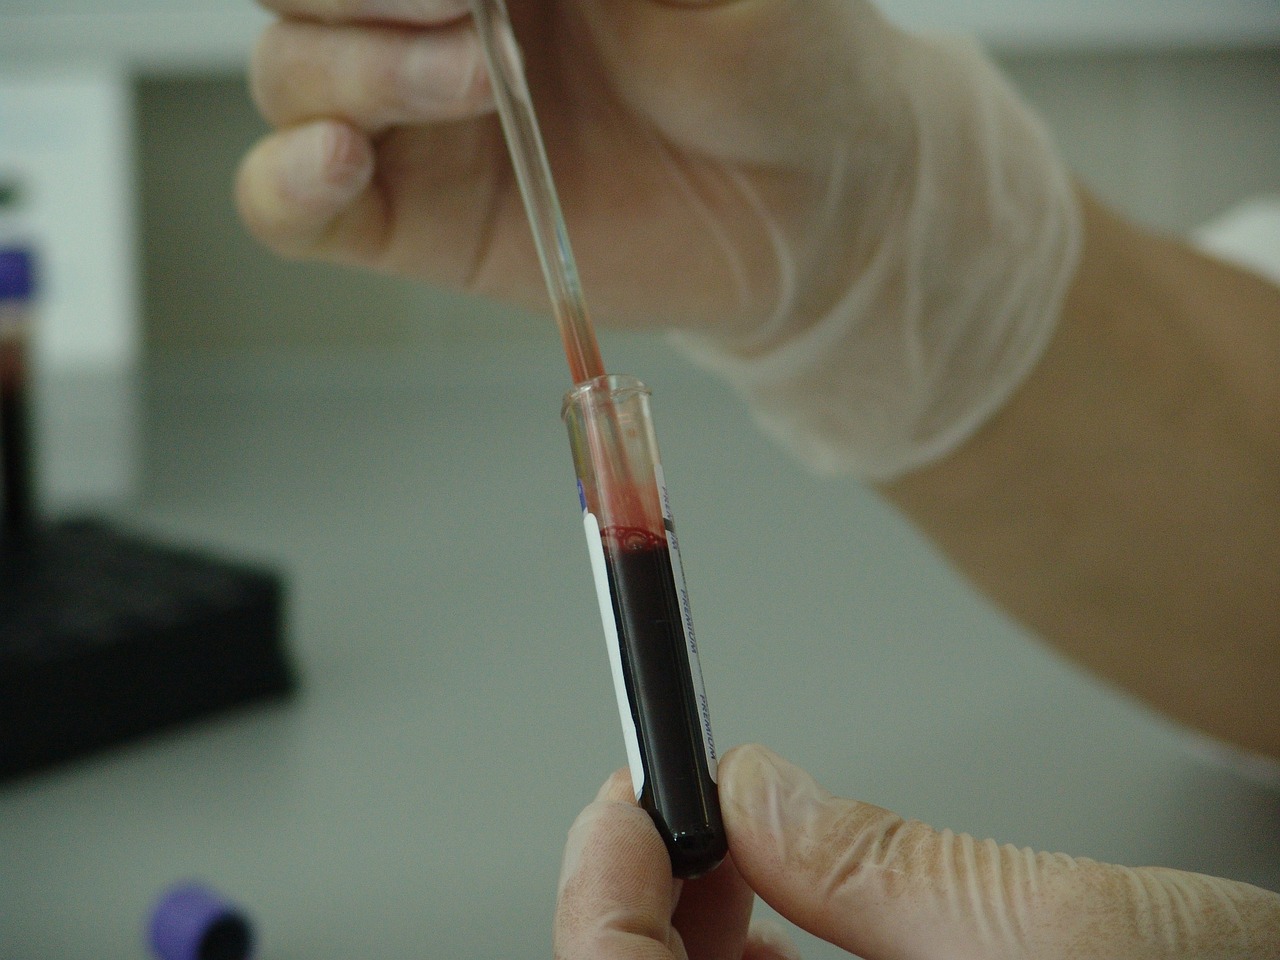 Prix prise de sang sans ordonnance : Découvrez les tarifs pour des analyses sanguines sans prescription médicale